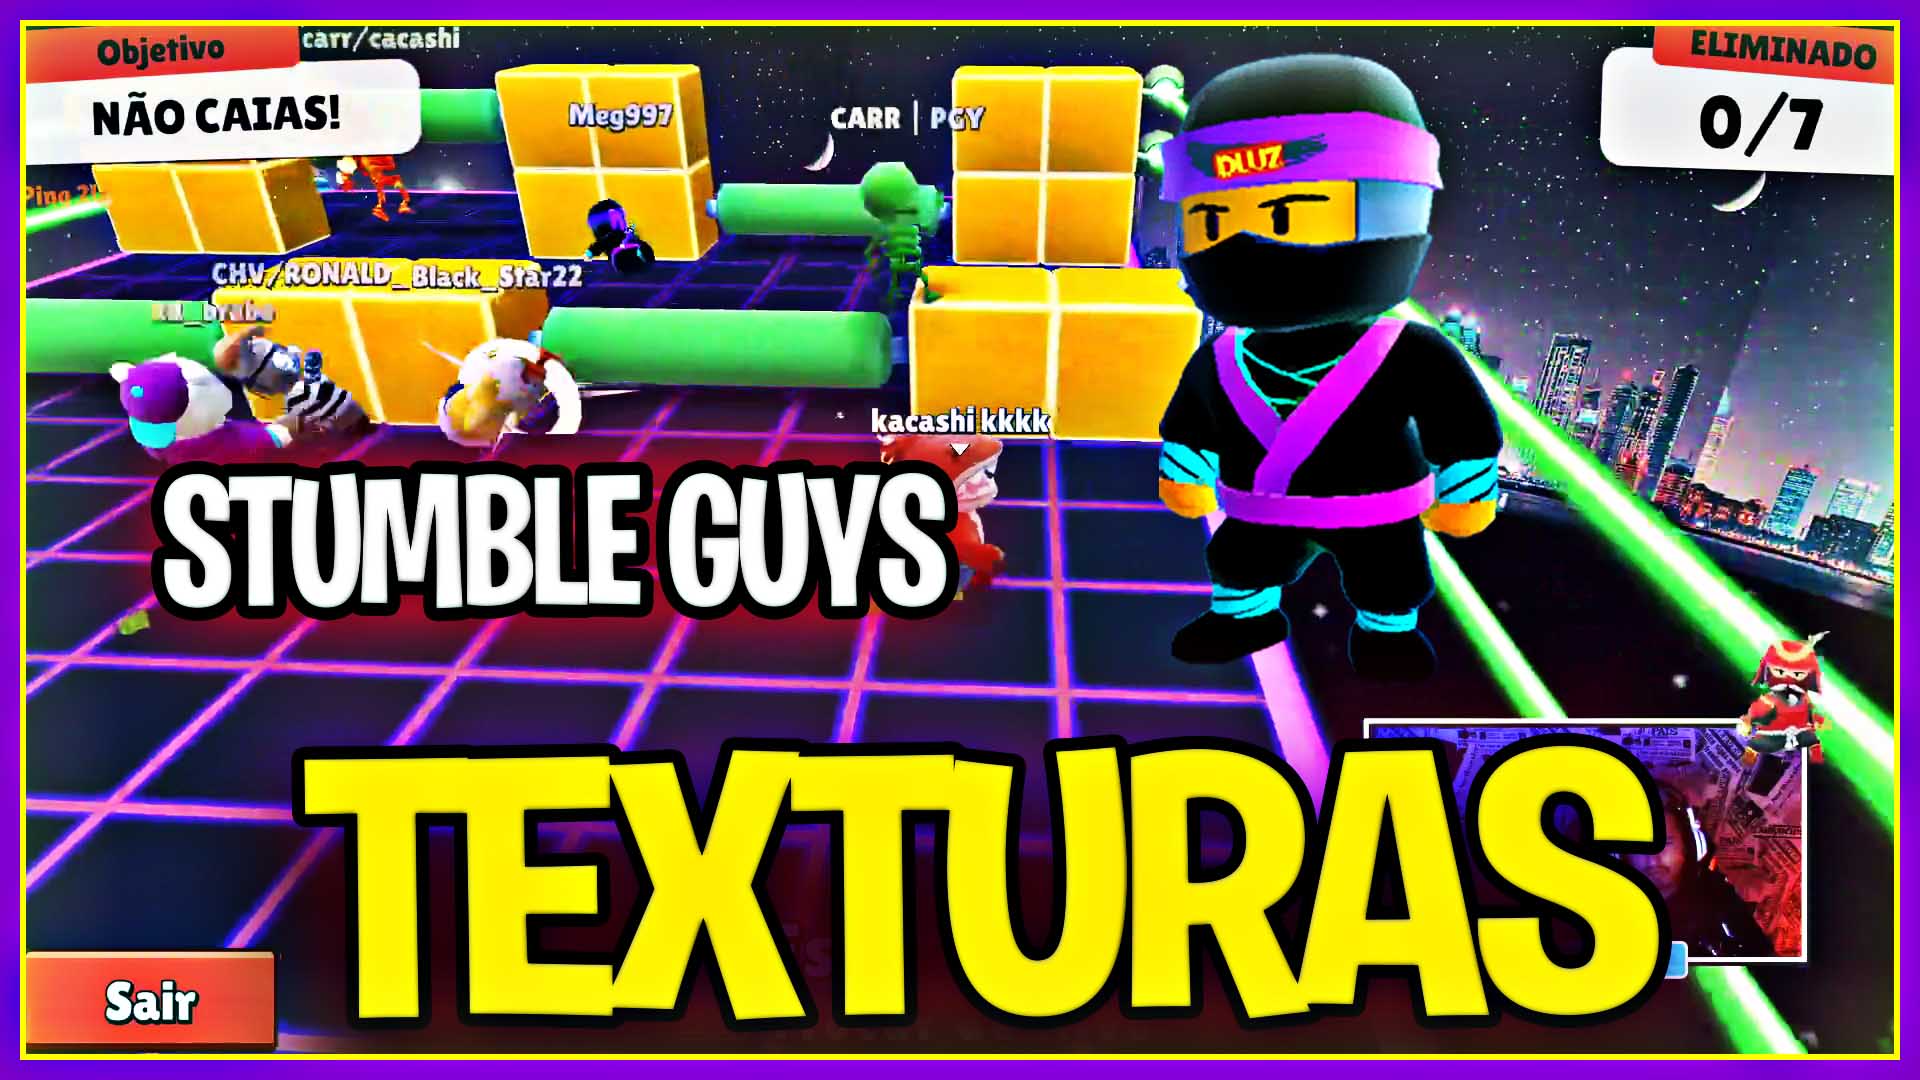 Texturas para stumble guys mobile com block dash infinito - Dluz Games